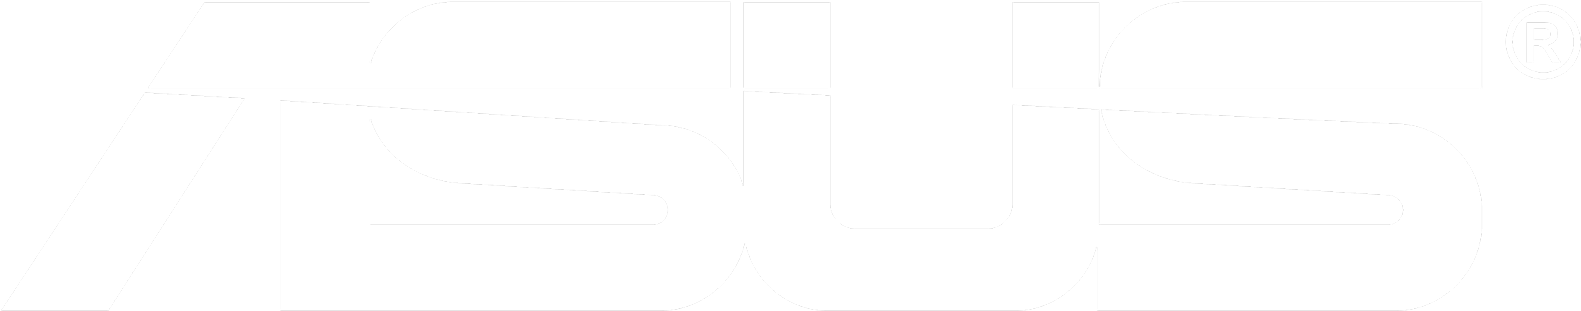 Asus Company Logo PNG image